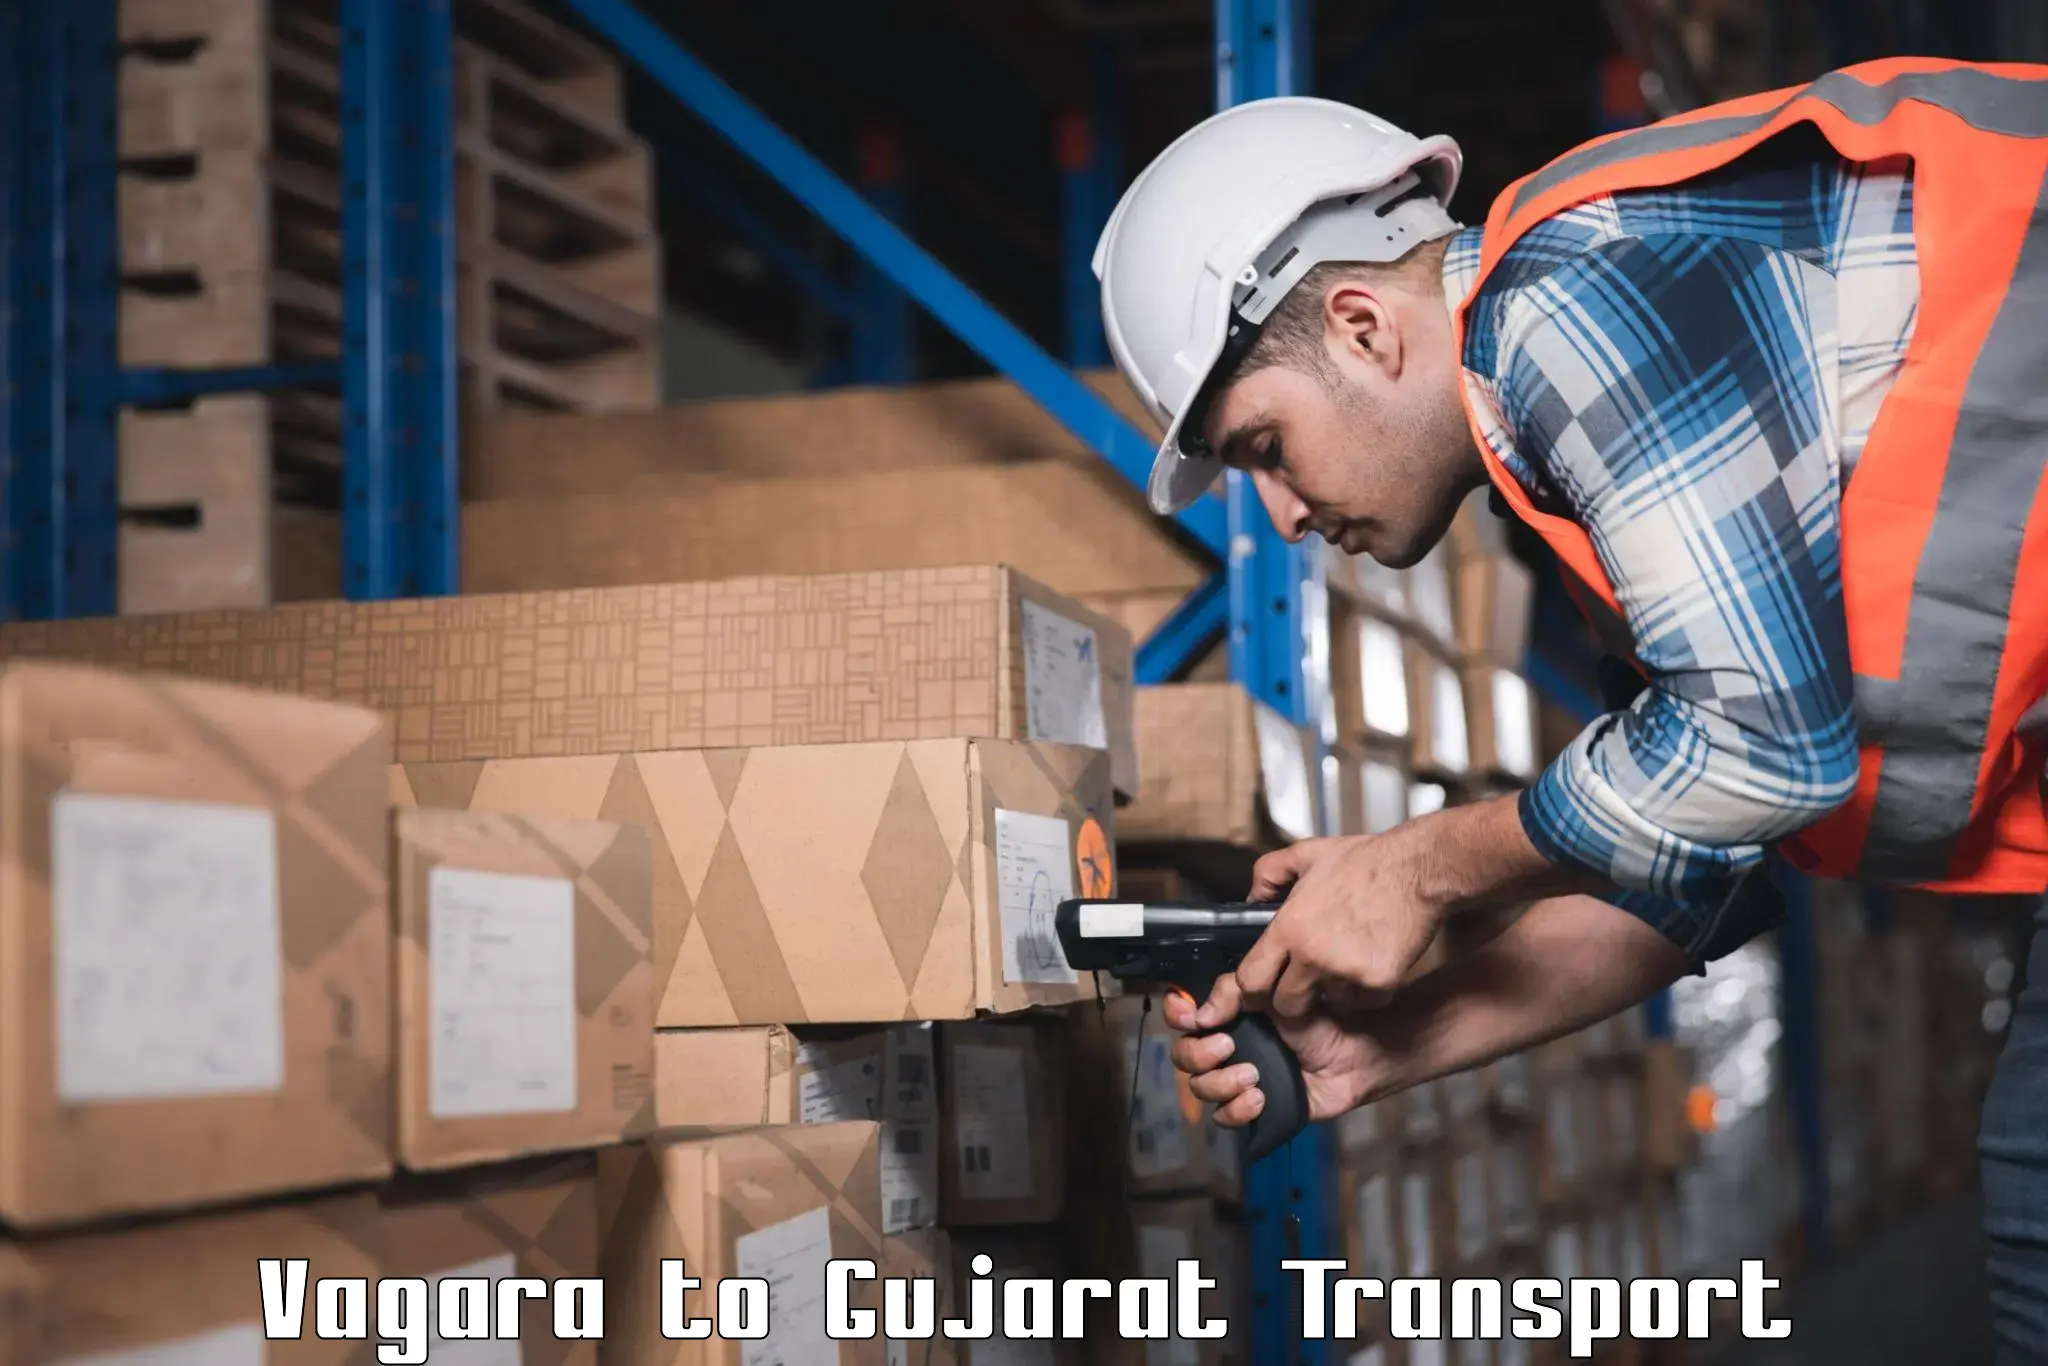 Interstate goods transport Vagara to Valsad